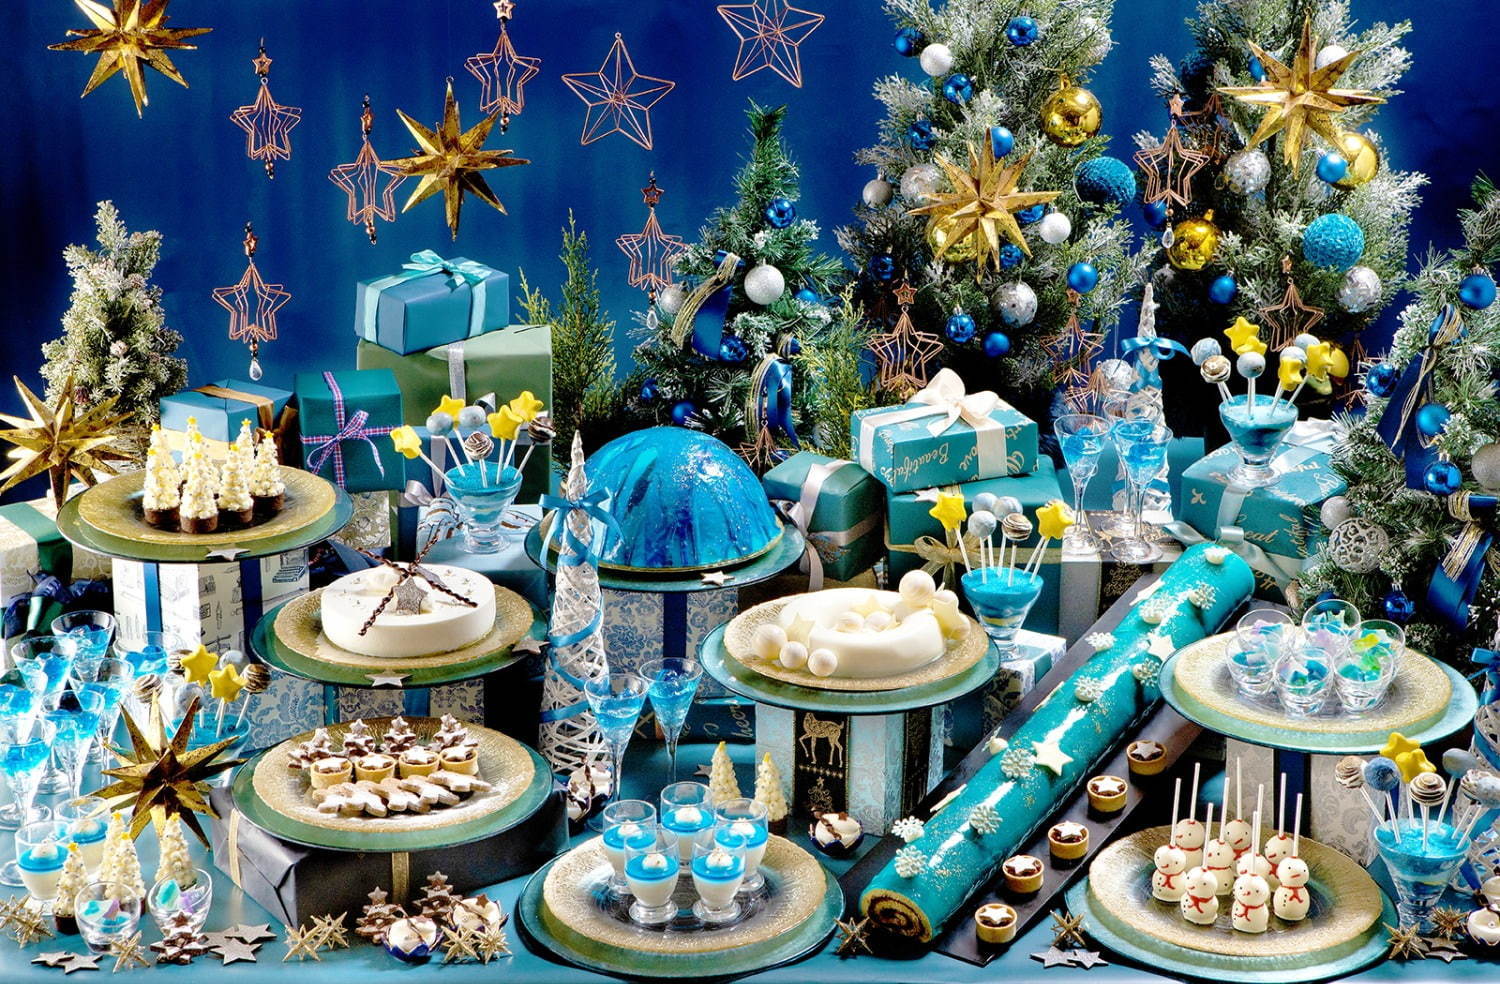 煌めく星空 イメージのクリスマススイーツビュッフェ ヒルトン福岡シーホークで 雪だるまケーキも ファッションプレス